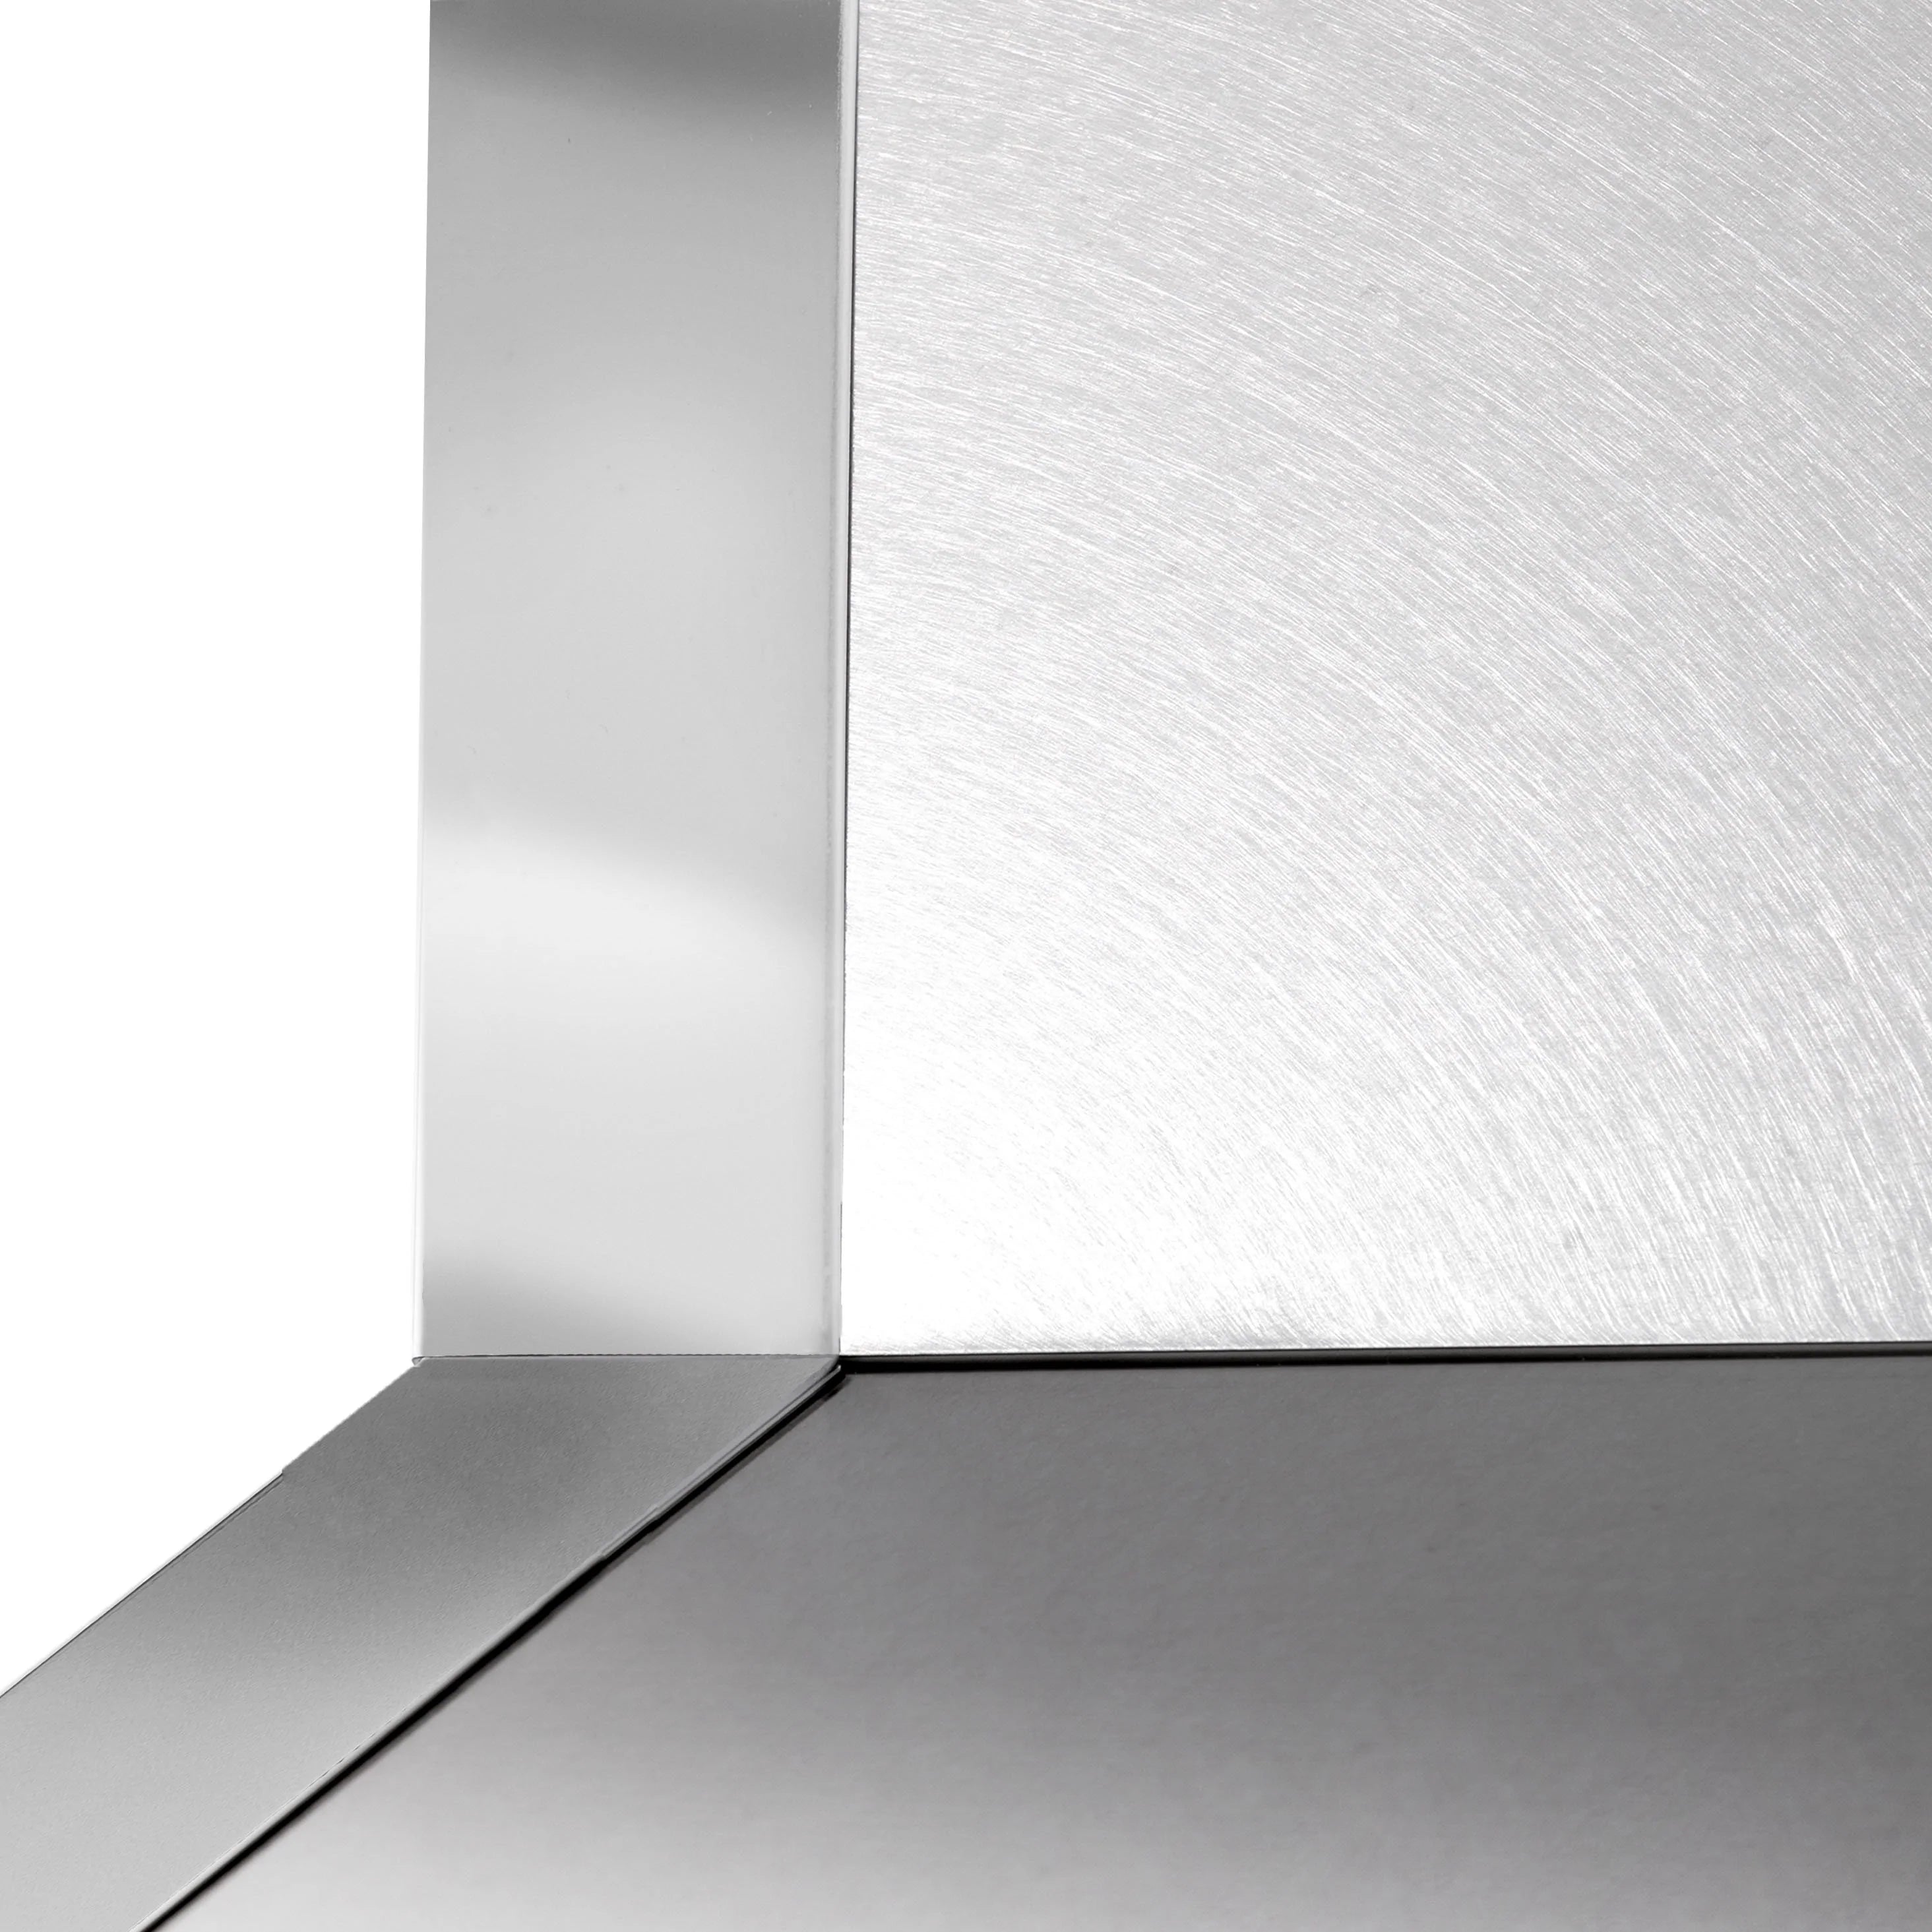 ZLINE Designer Series Wall Mount Range Hood in DuraSnow® Stainless Steel with Mirror Accents (655MR)